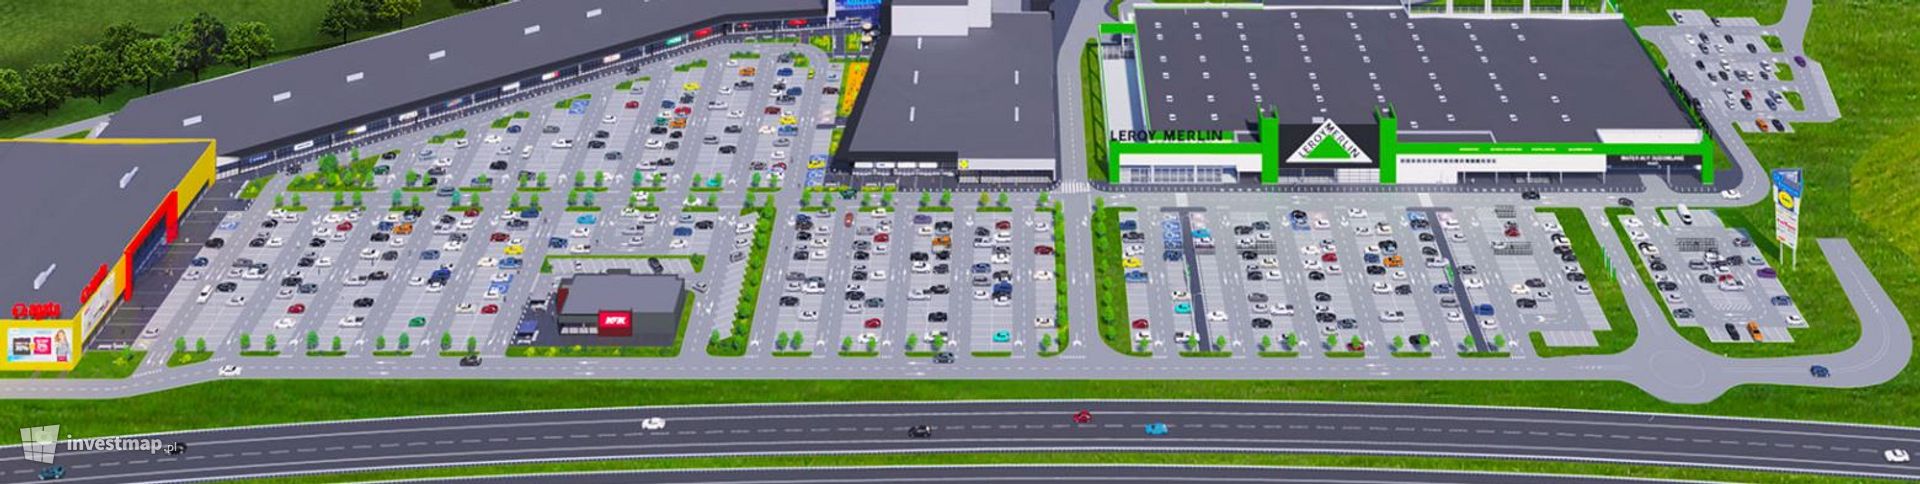 Coraz bliżej otwarcia nowego, wielkiego parku handlowego w Koszalinie 